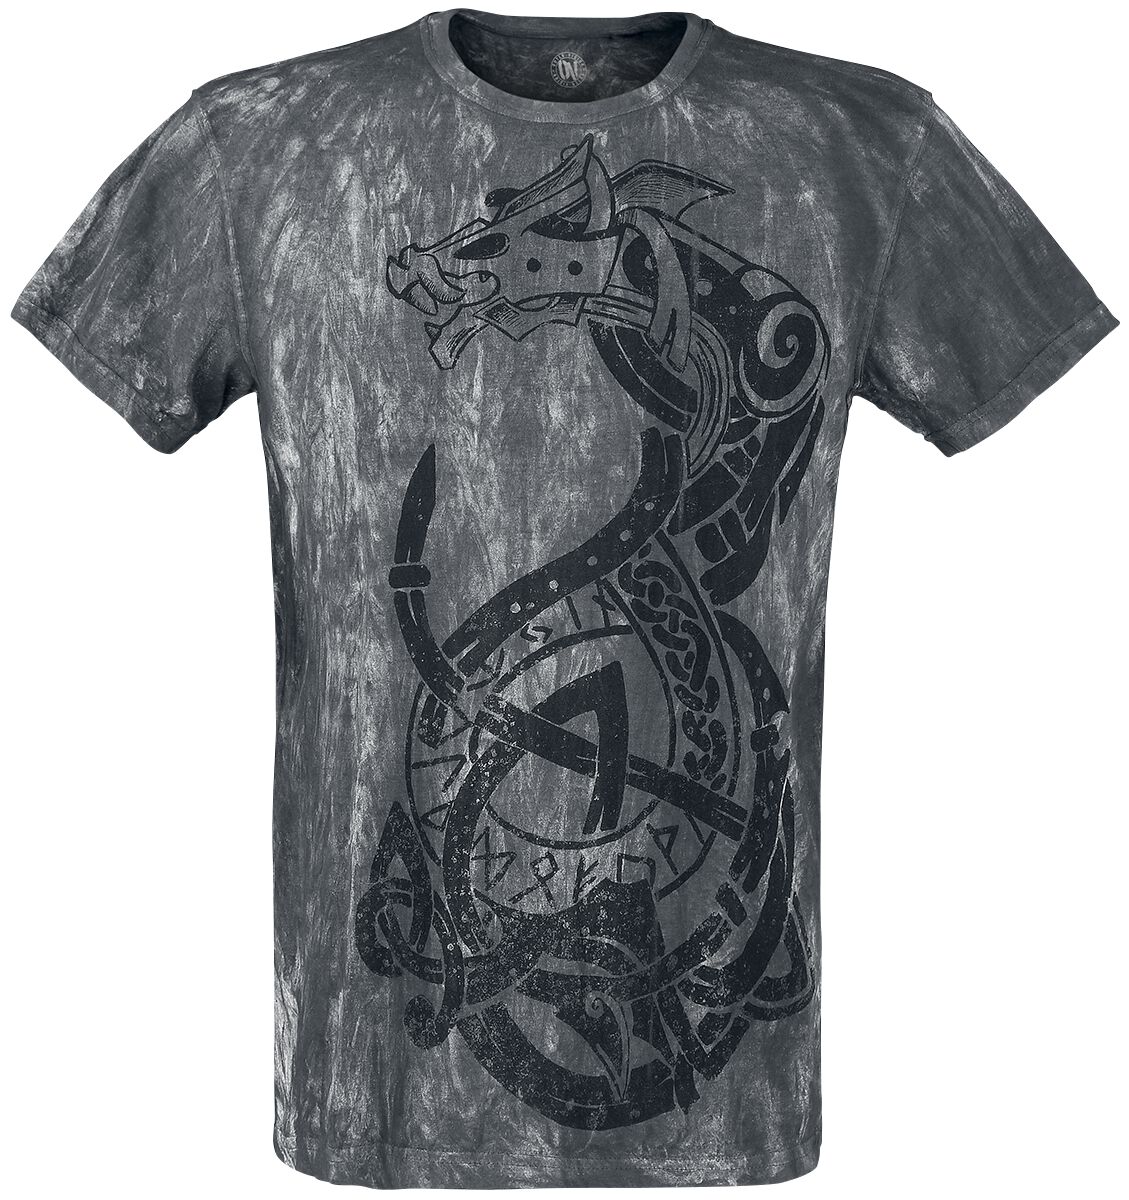 Outer Vision Viking Warrior T-Shirt grau in 4XL